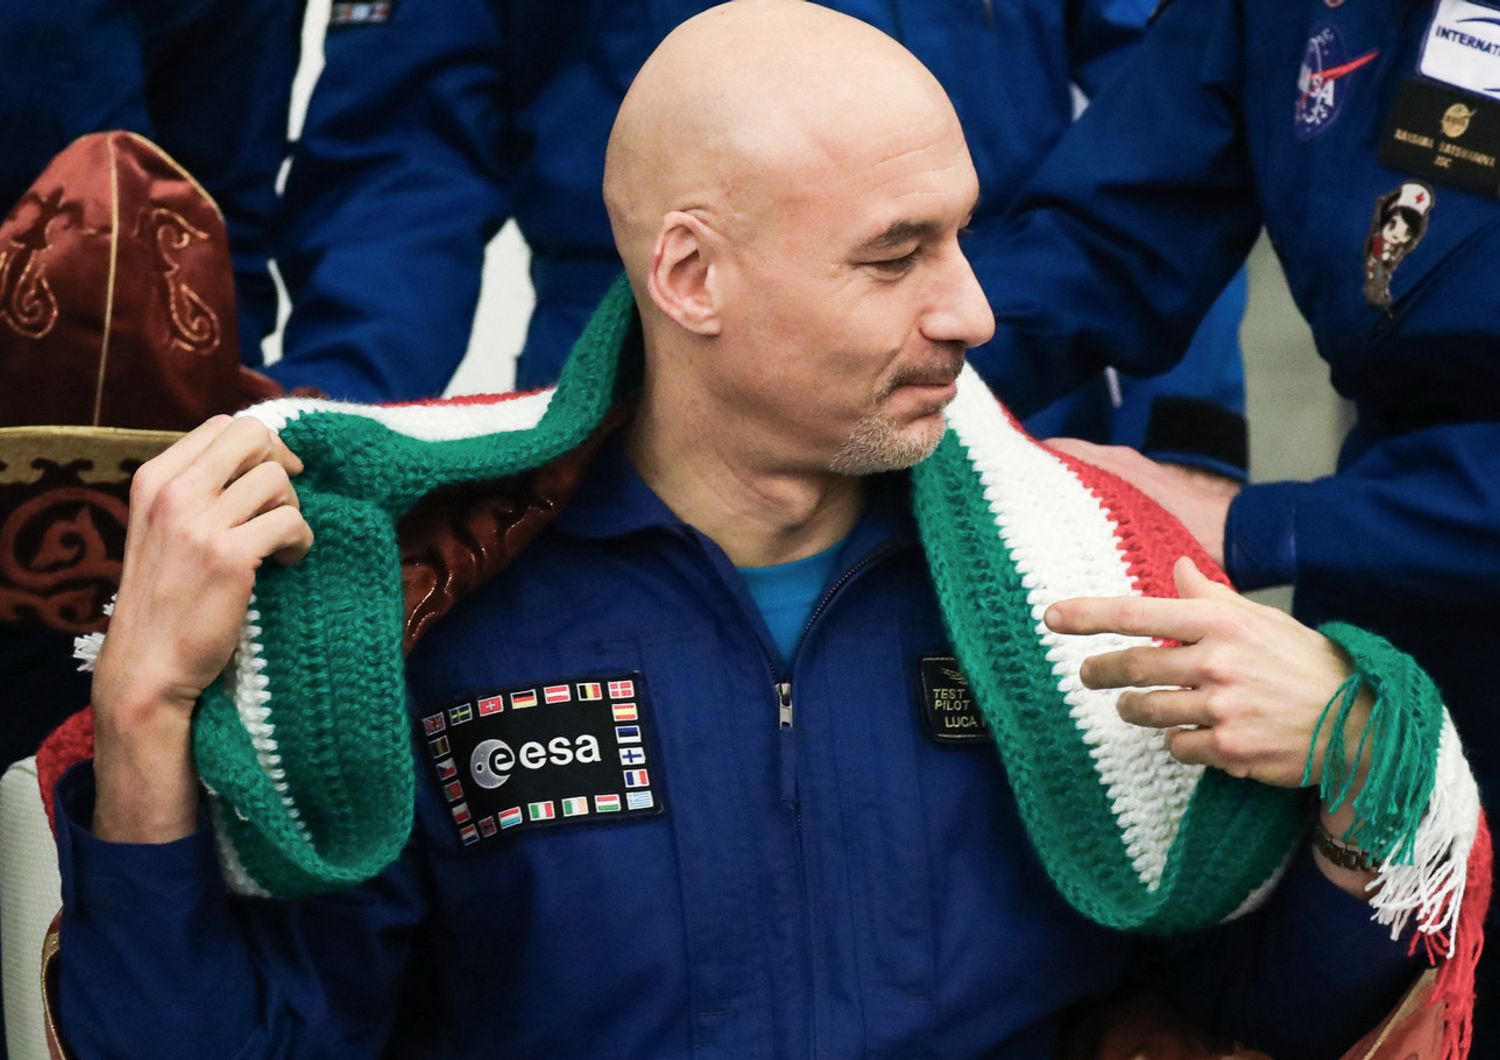 L'astronauta Luca Parmitano